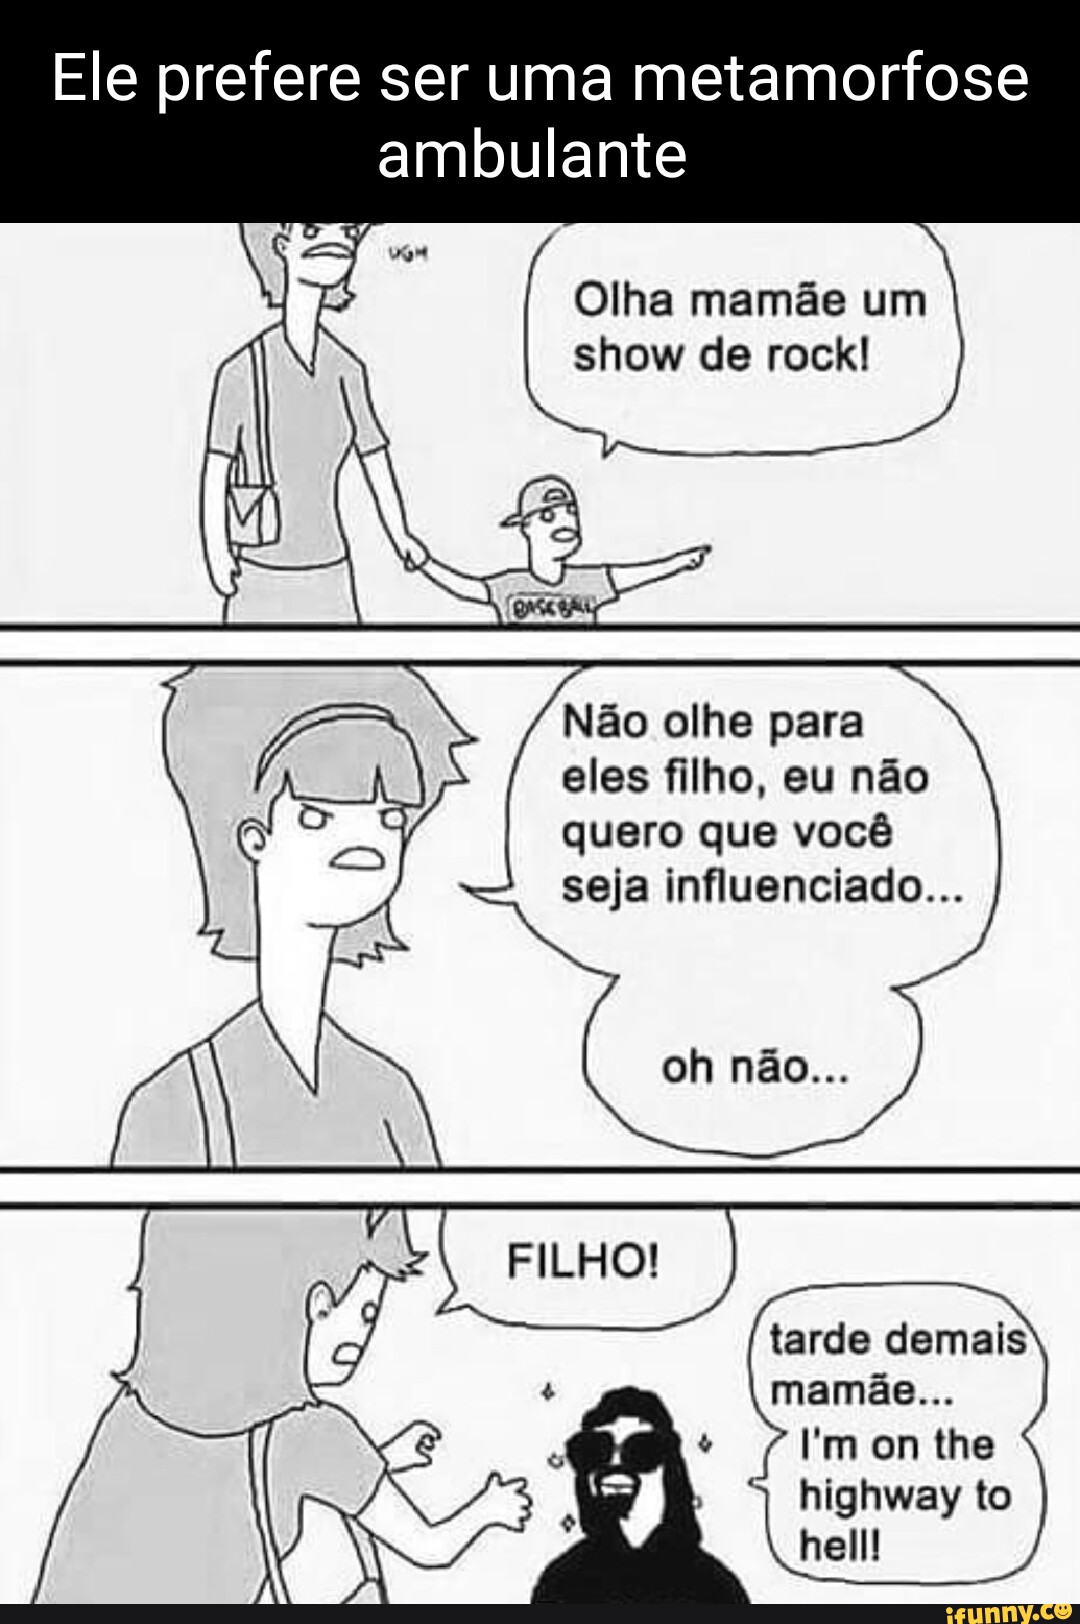 Memes da Vida (Qmemesdavidaofe Minha cabeça o dia todo: Que isso meu filho  calma Ele goooosta CAVALO (Qmemesdavida.ofe - iFunny Brazil